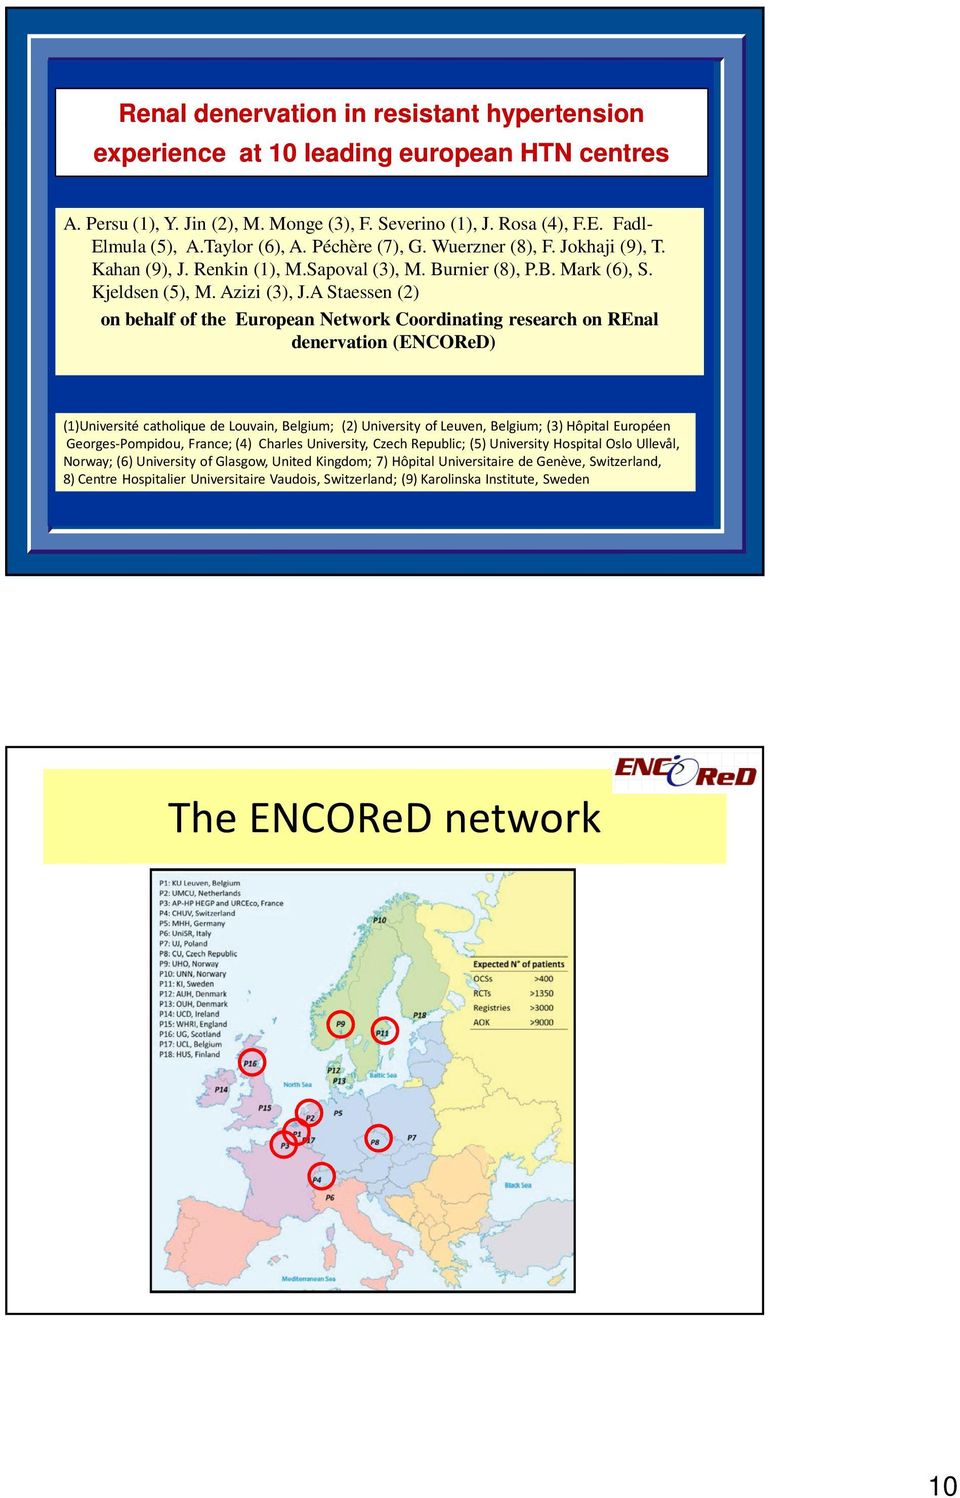 A Staessen (2) on behalf of the European Network Coordinating research on REnal denervation (ENCOReD) (1)Université catholique de Louvain, Belgium; (2) University of Leuven, Belgium; (3) Hôpital